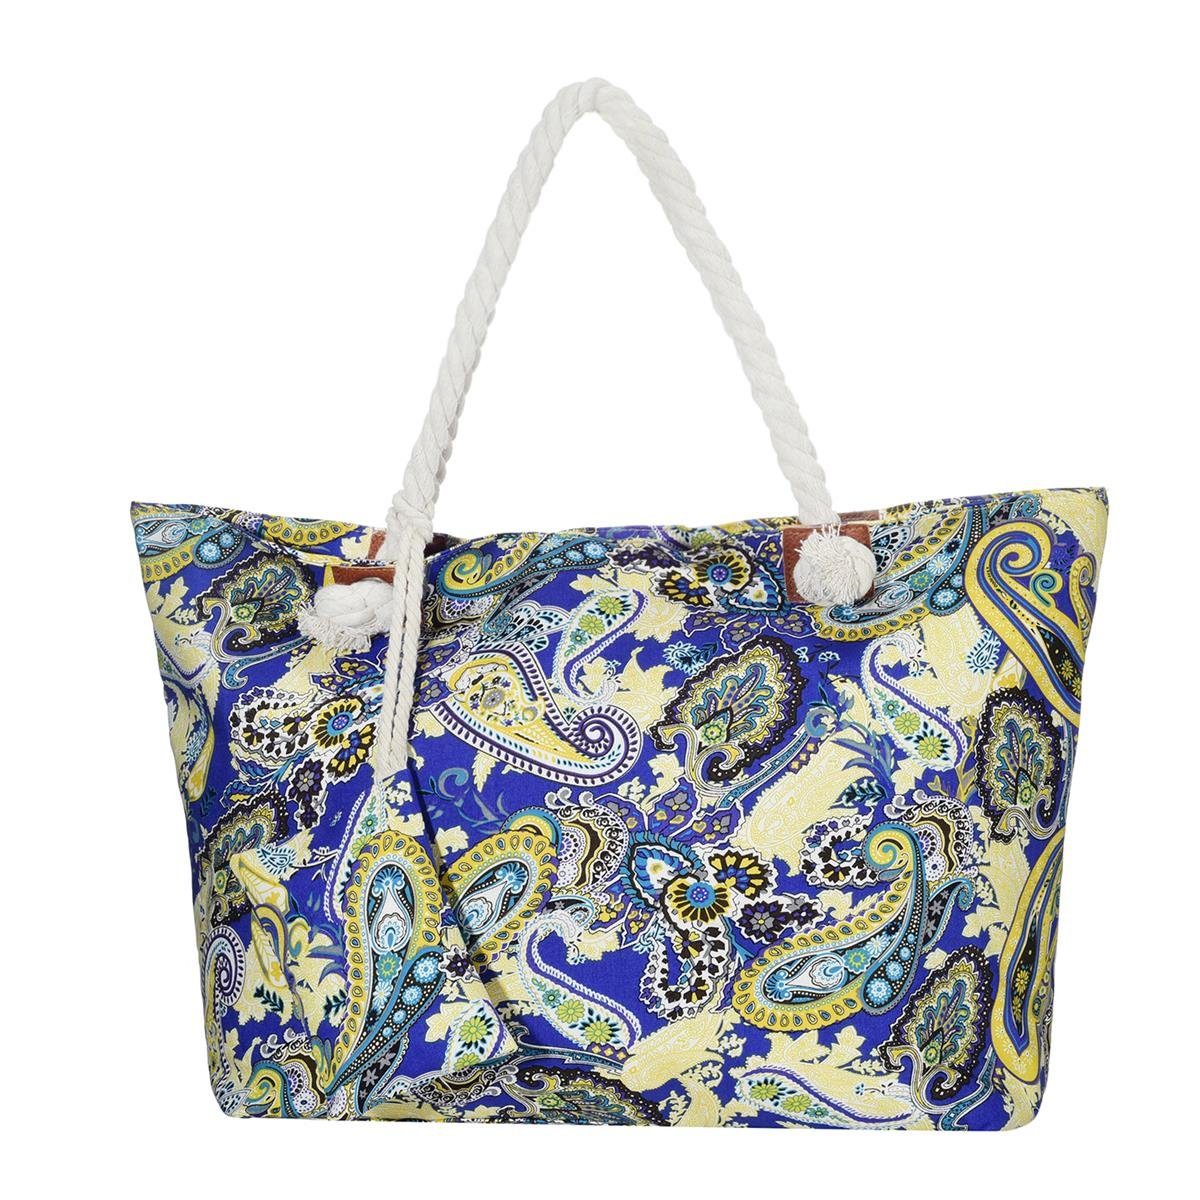 DonDon Strandtasche Shopper Schultertasche Beach Style (2-tlg), Große Strandtasche, mit Reißverschluss, tolle Motive paisley-Muster bunt